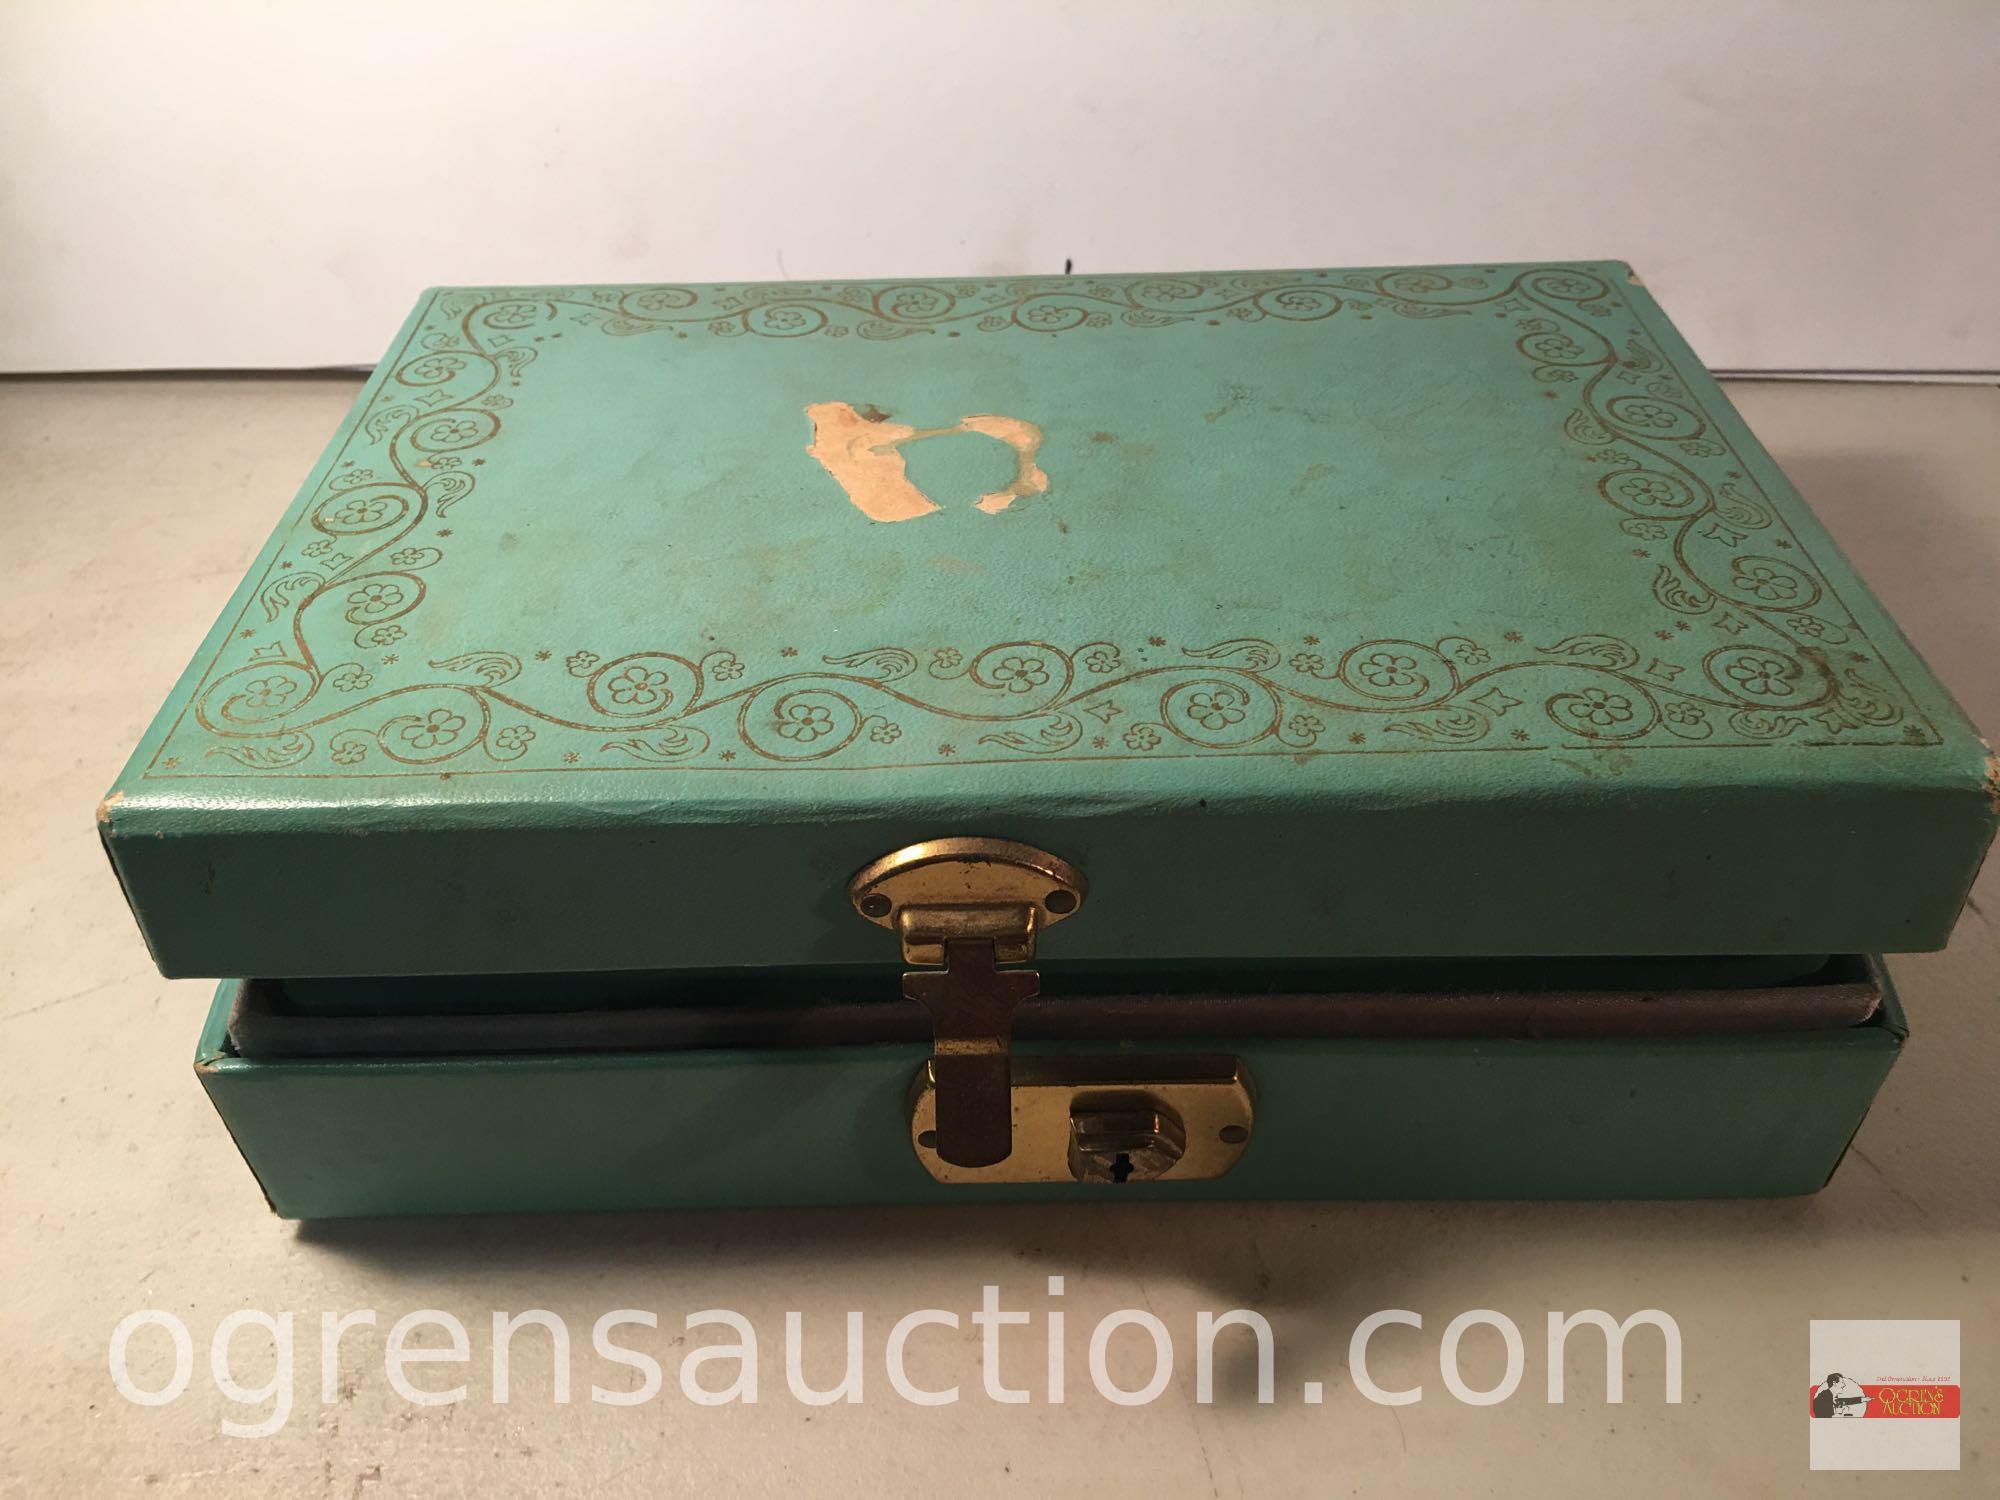 Jewelry - Vintage jewelry box w/ misc. jewelry and buttons, 9.5"w